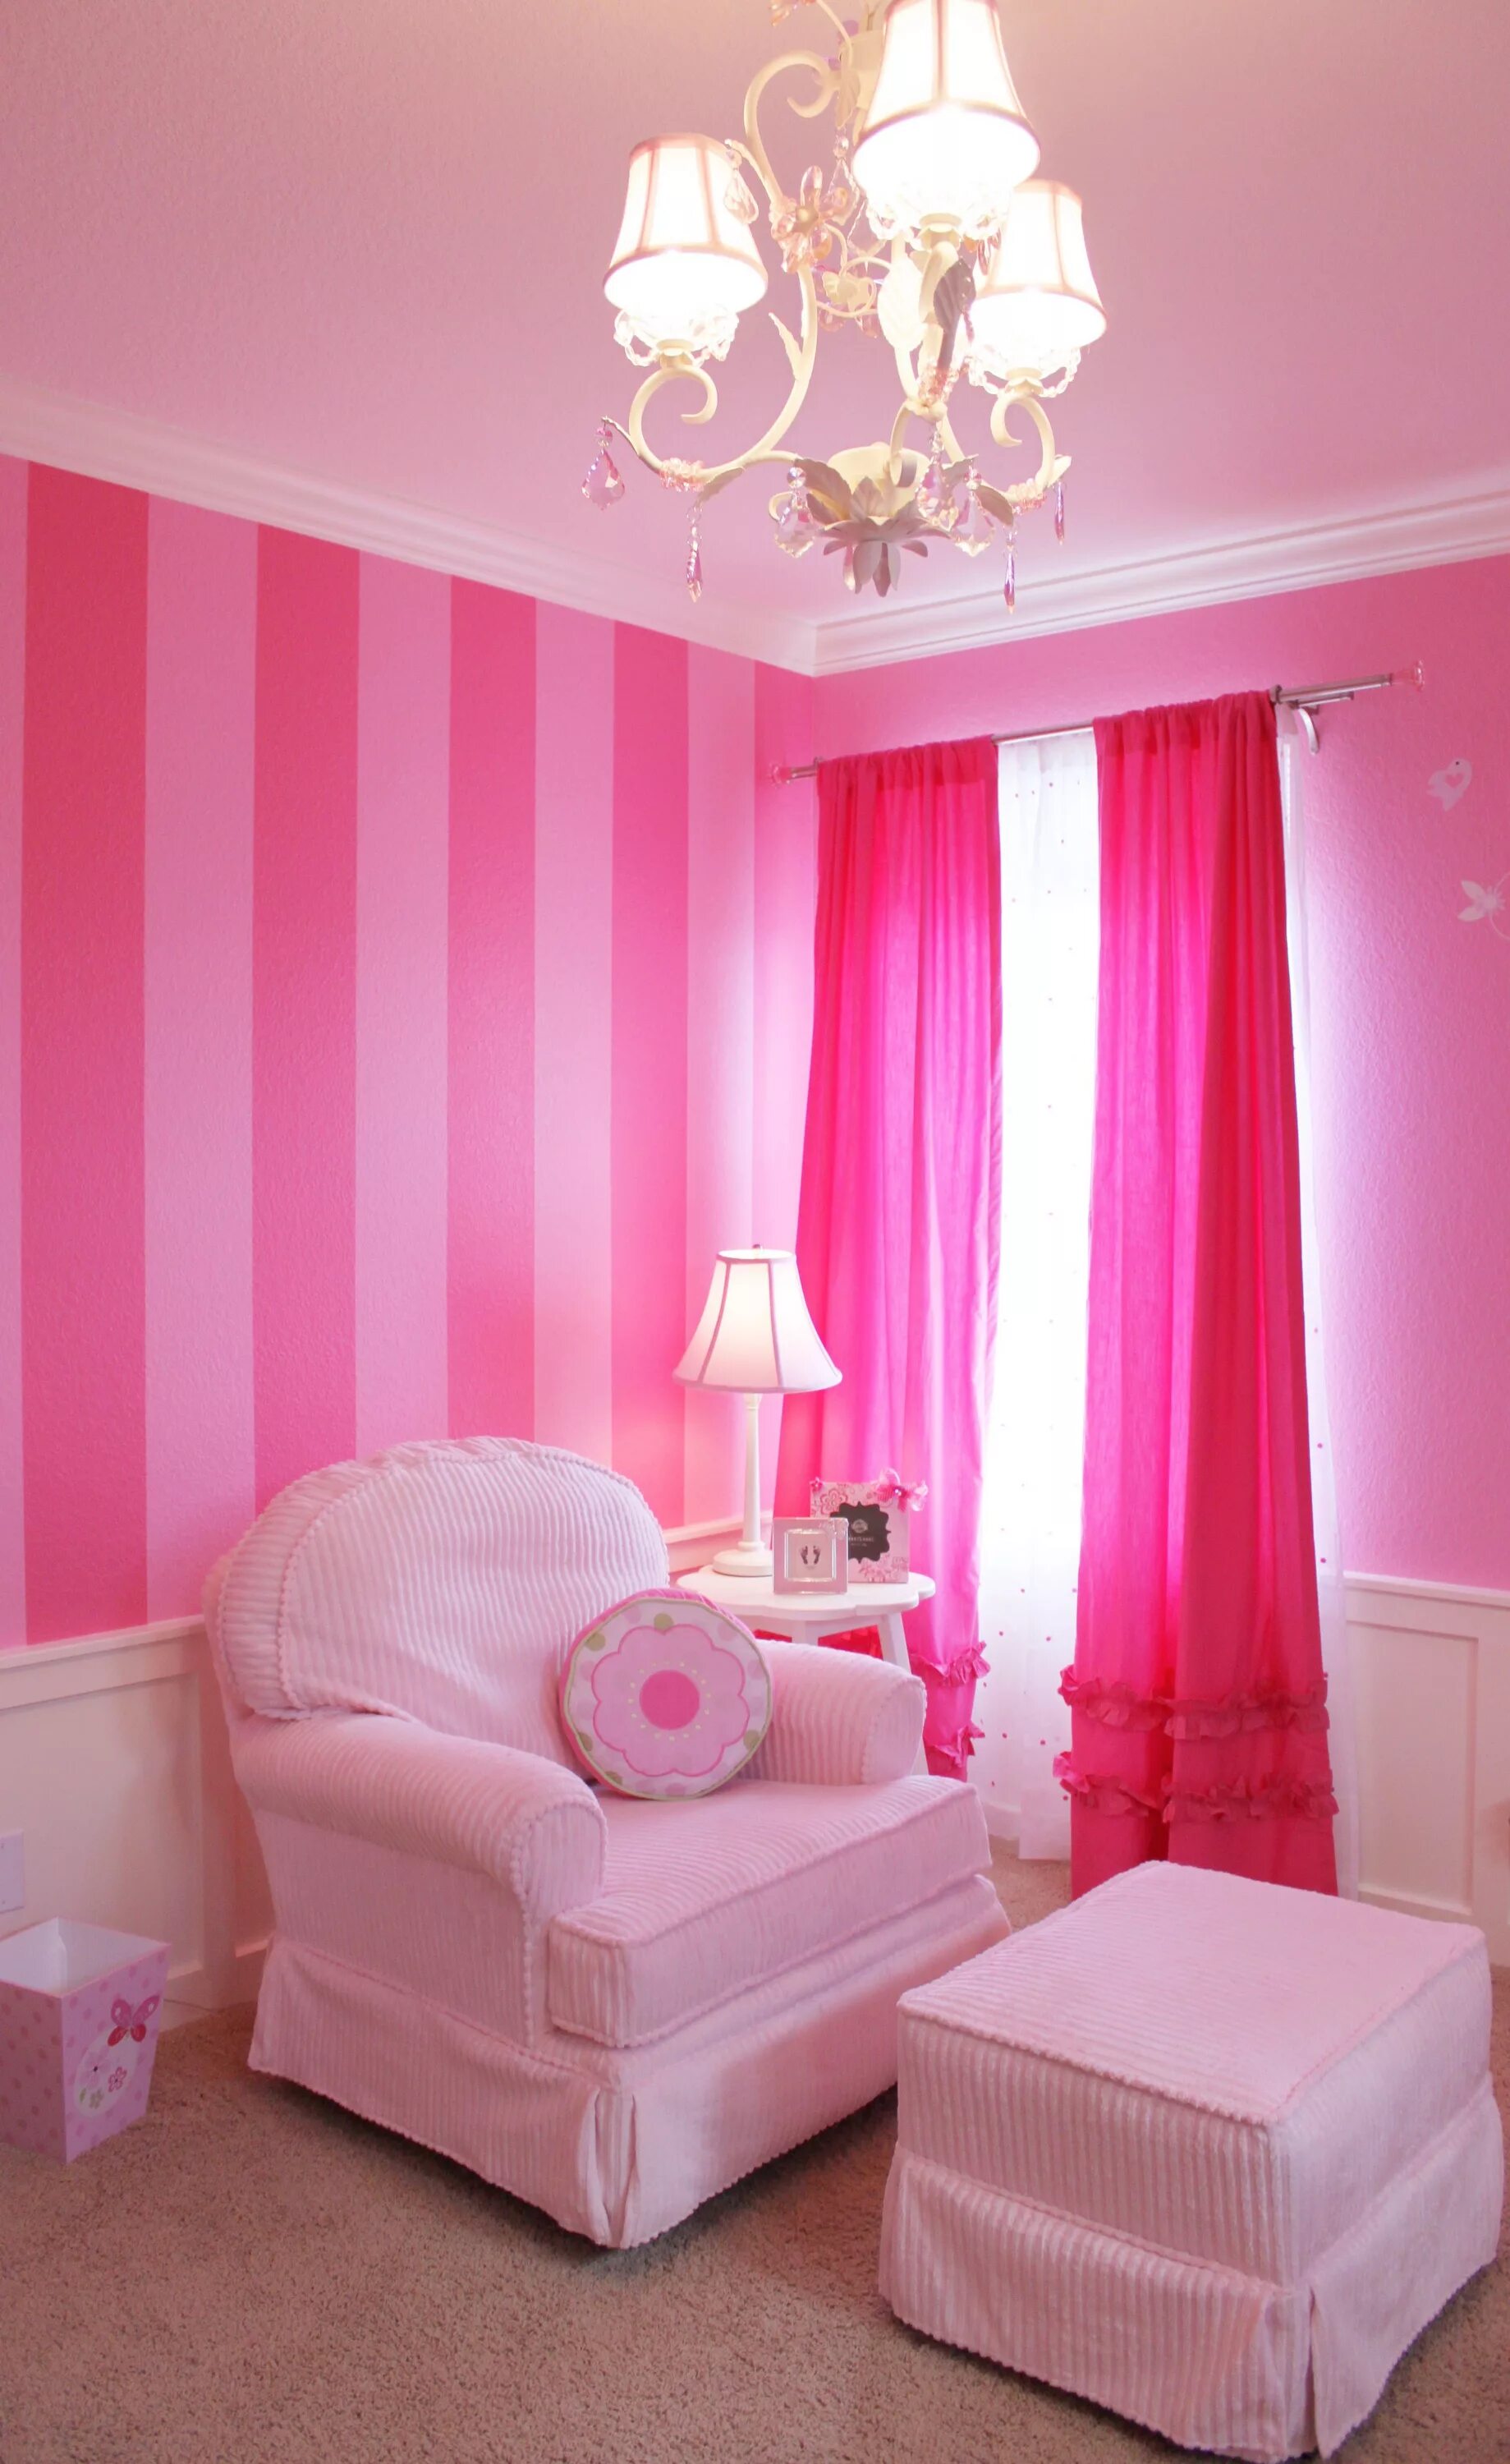 Комната в розовом цвете. Розовый цвет в интерьере. Комната для девочки розового цвета. Розовые стены в интерьере.